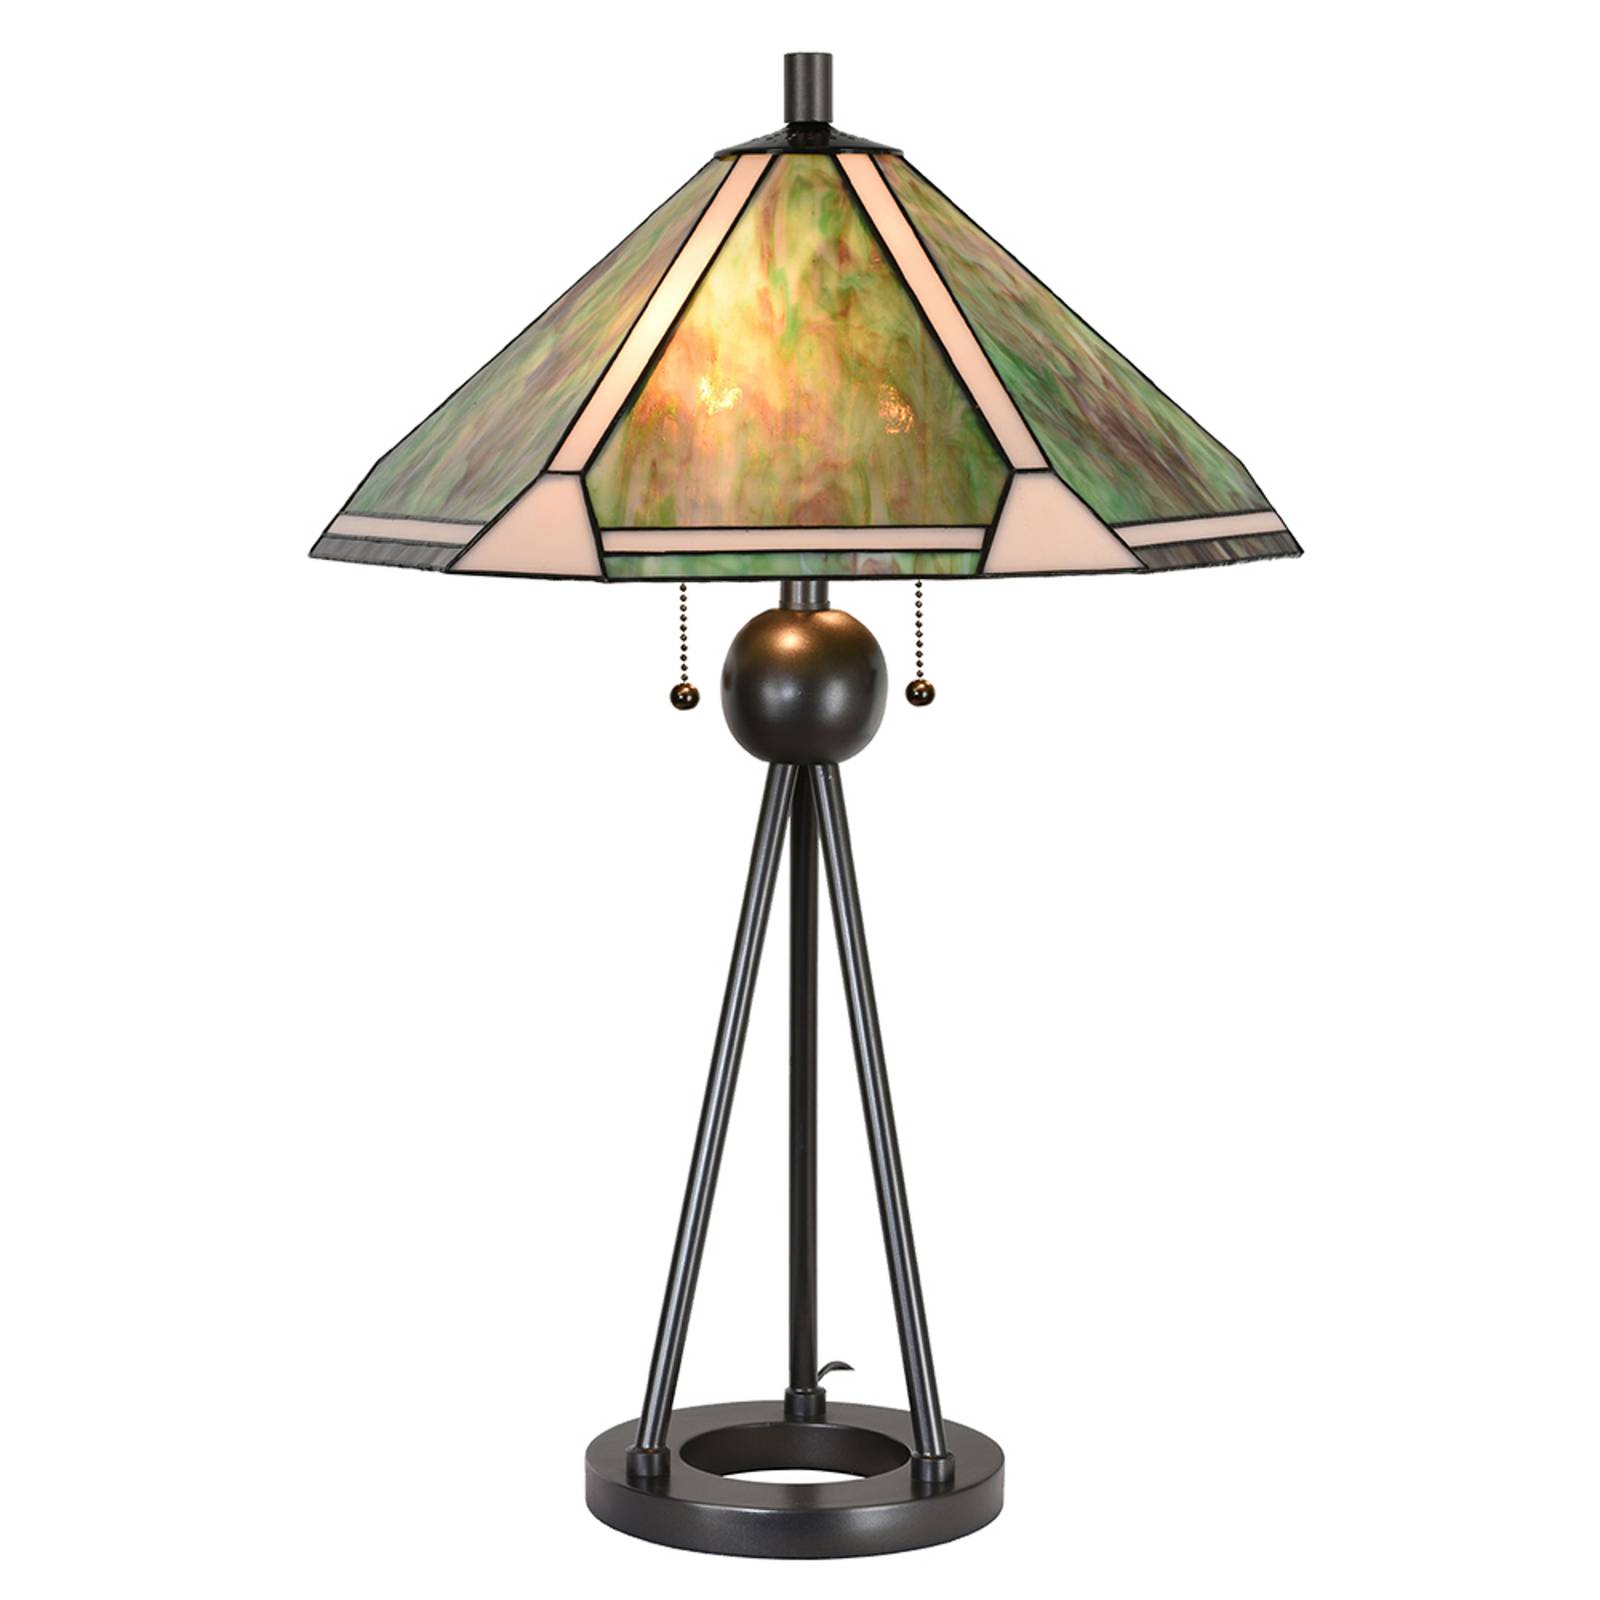 Asztali lámpa 5LL-6165 Tiffany stílusban, Ø 50 cm